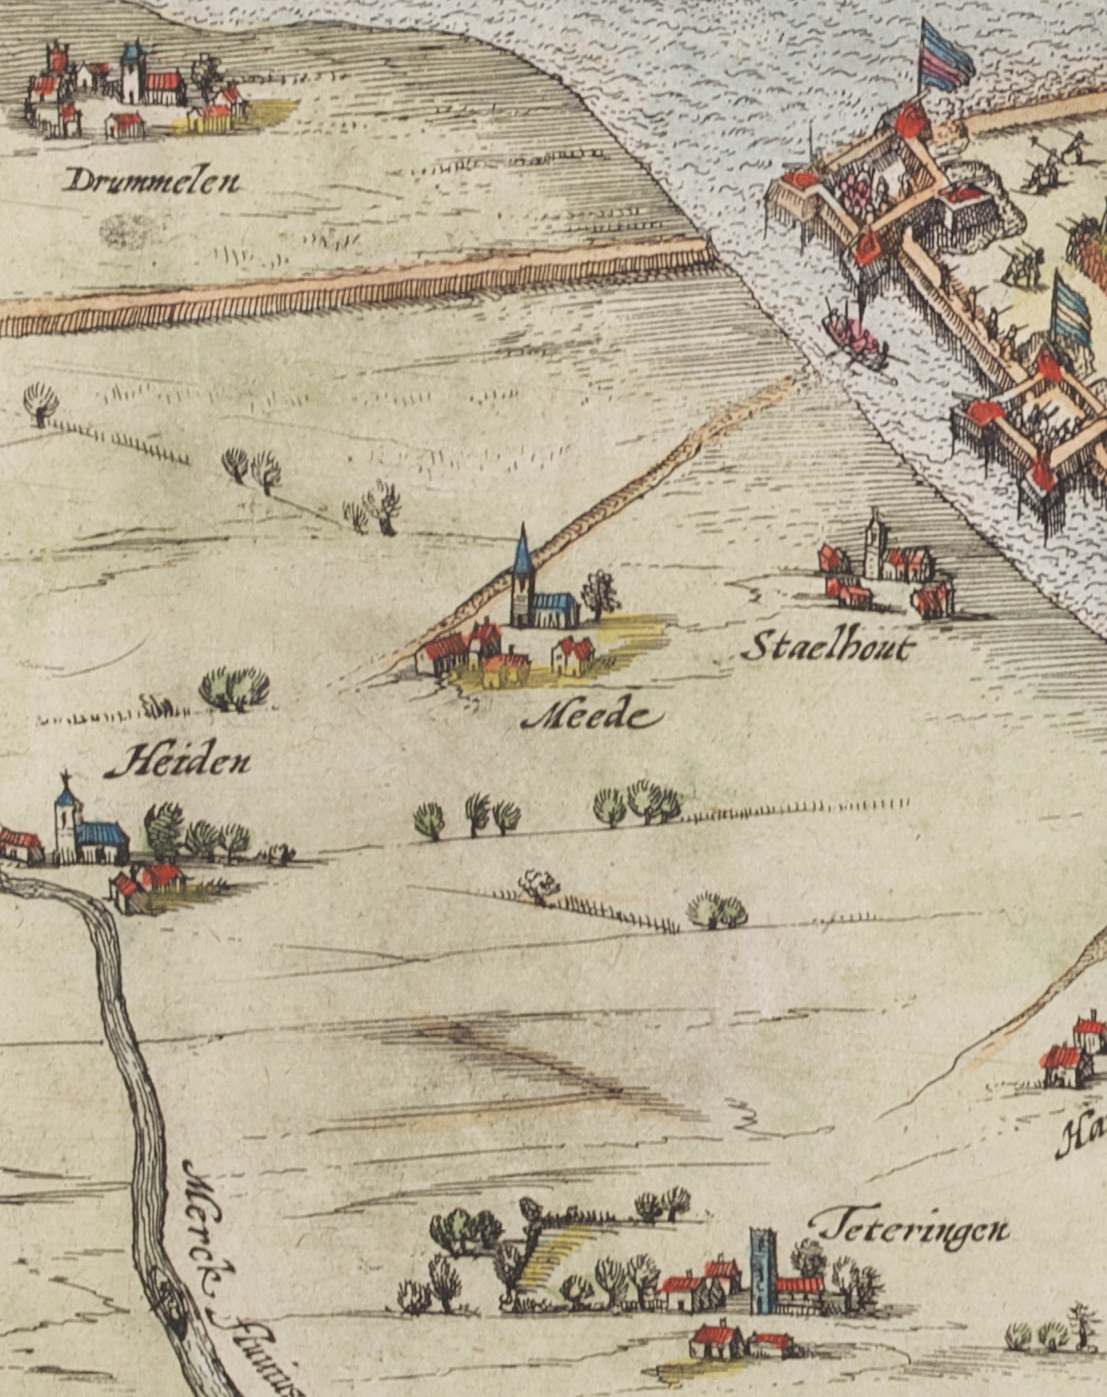 Made (Meede, de May, die Meede) op een detail van een ingekleurde kaart van het beleg van Geertruidenberg door prins Maurits in 1593. De plaatsen op de kaart zijn niet natuurgetrouw weergegeven. Bron: Breda’s Museum.